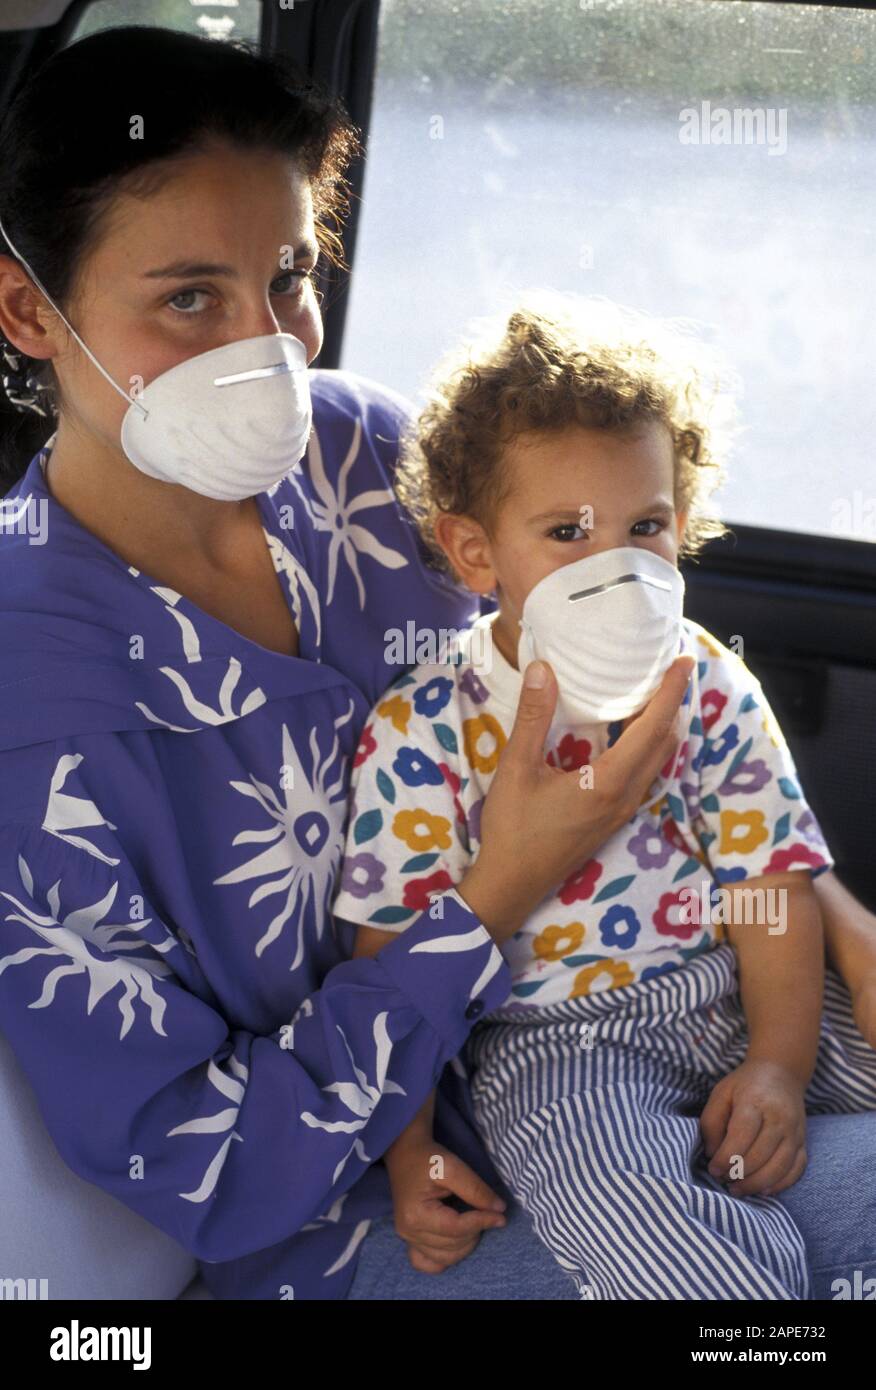 Frau Und Kind Mit Mundschutz Im Auto - Frau und Kind in einem Auto, mit Maske Stockfoto